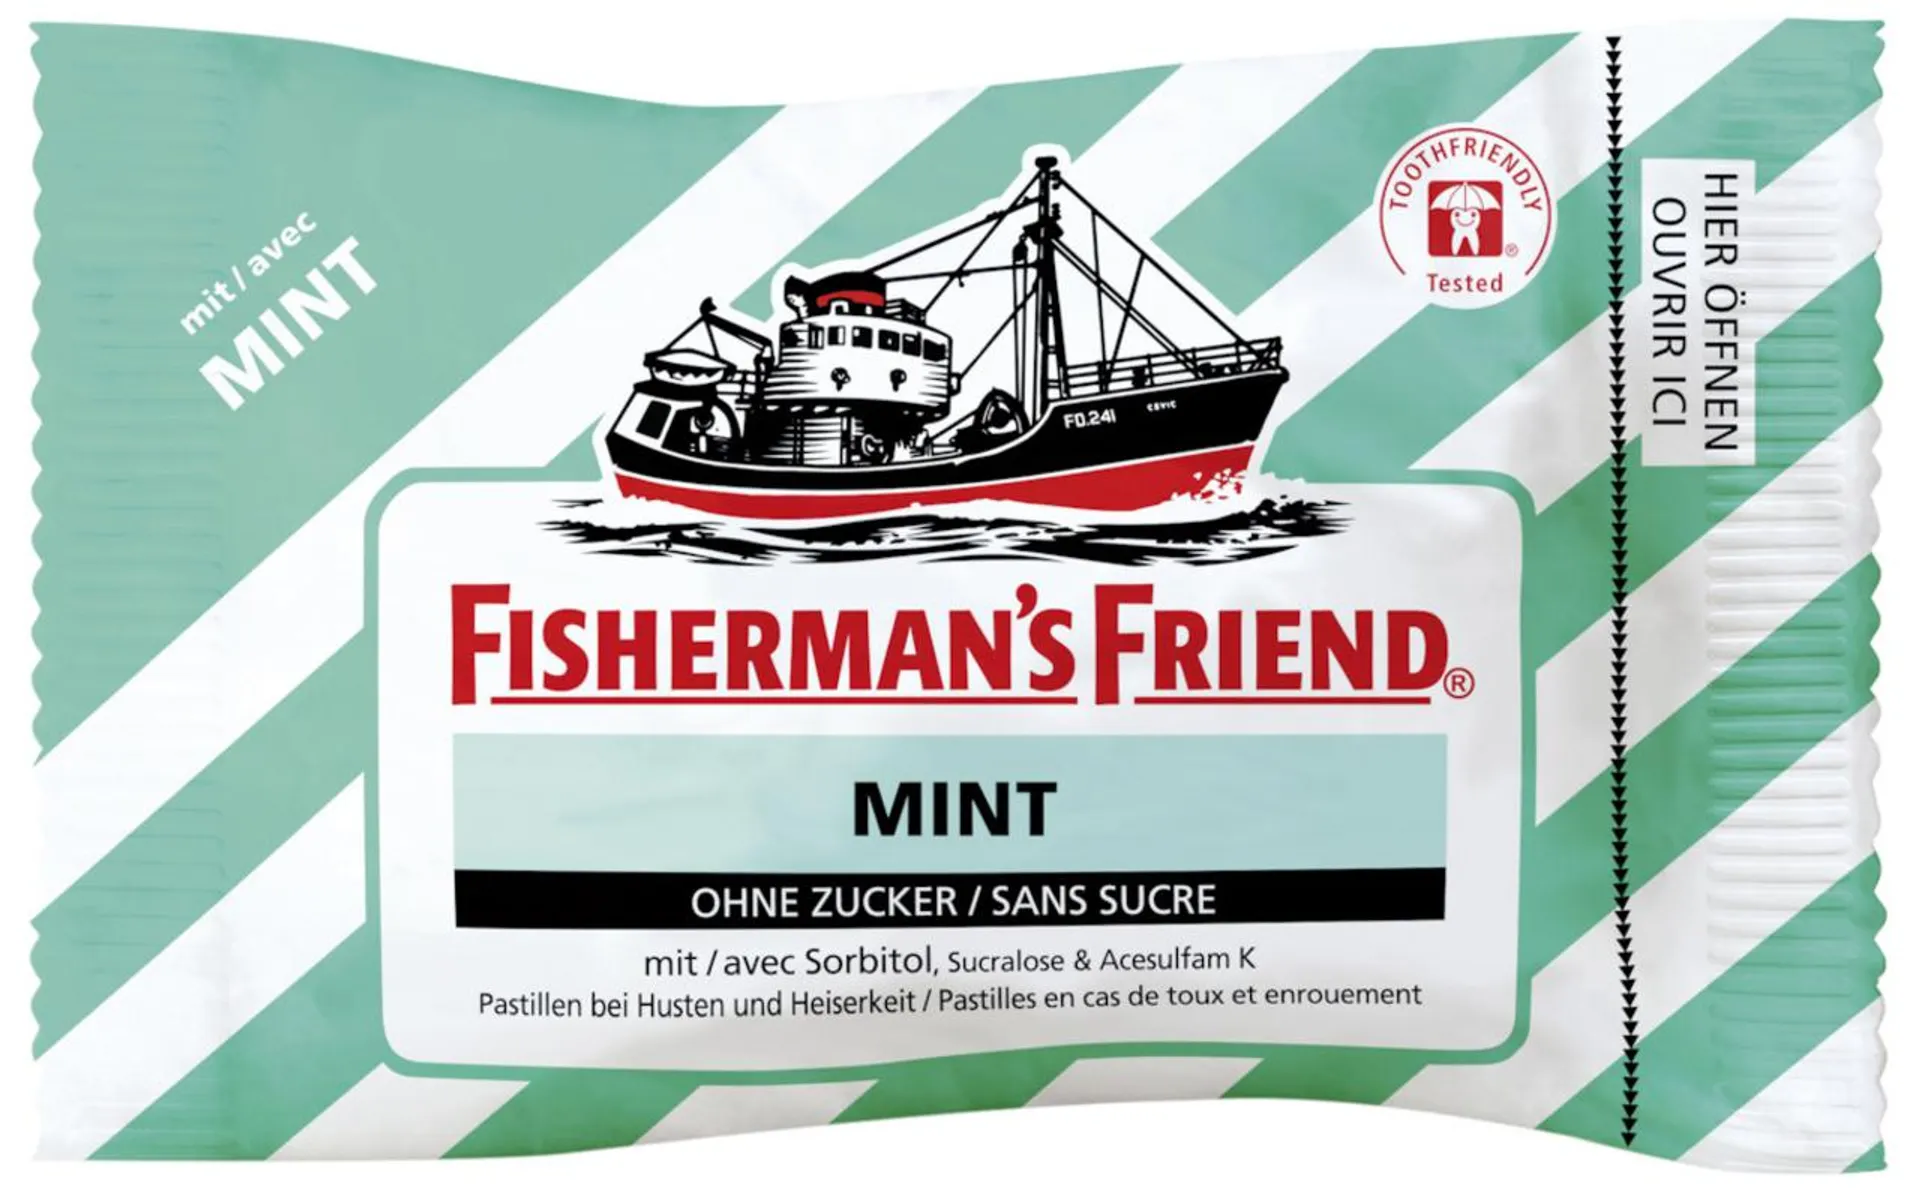 Fisherman's Friend mint